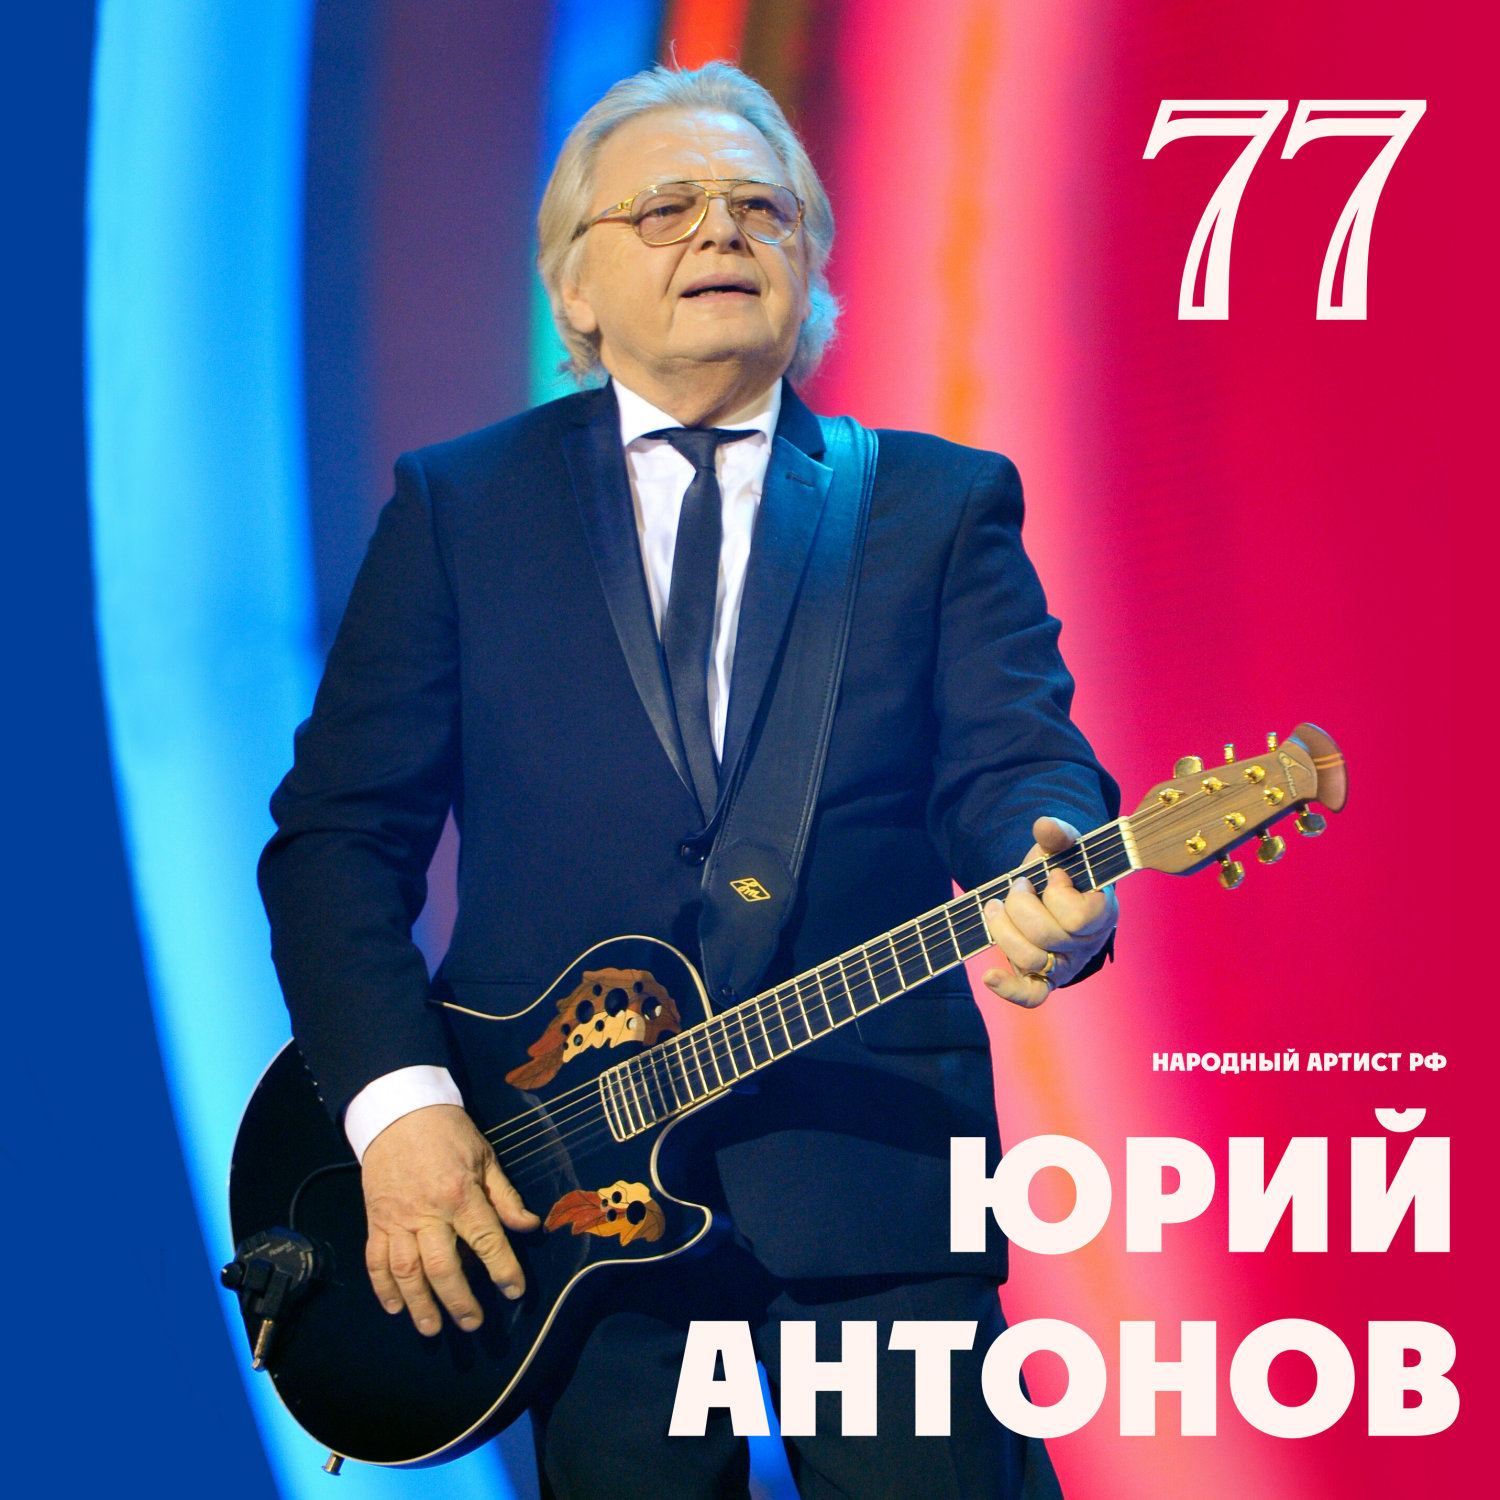 Юрий Антонов 77 лет.